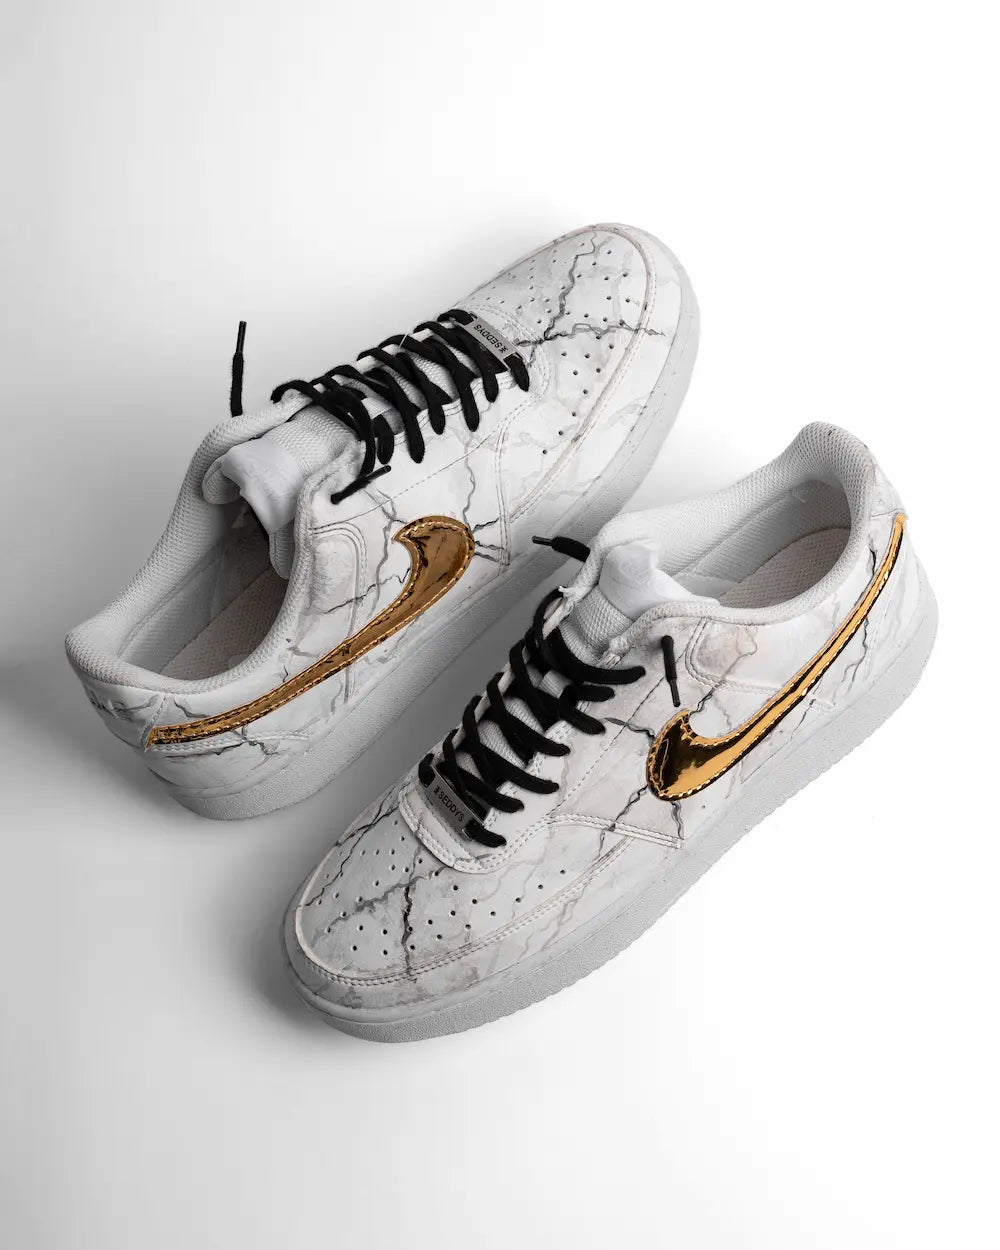 Nike Court Vision sneaker custom effetto marmo dipinto a mano, con tessuto metallizzato oro